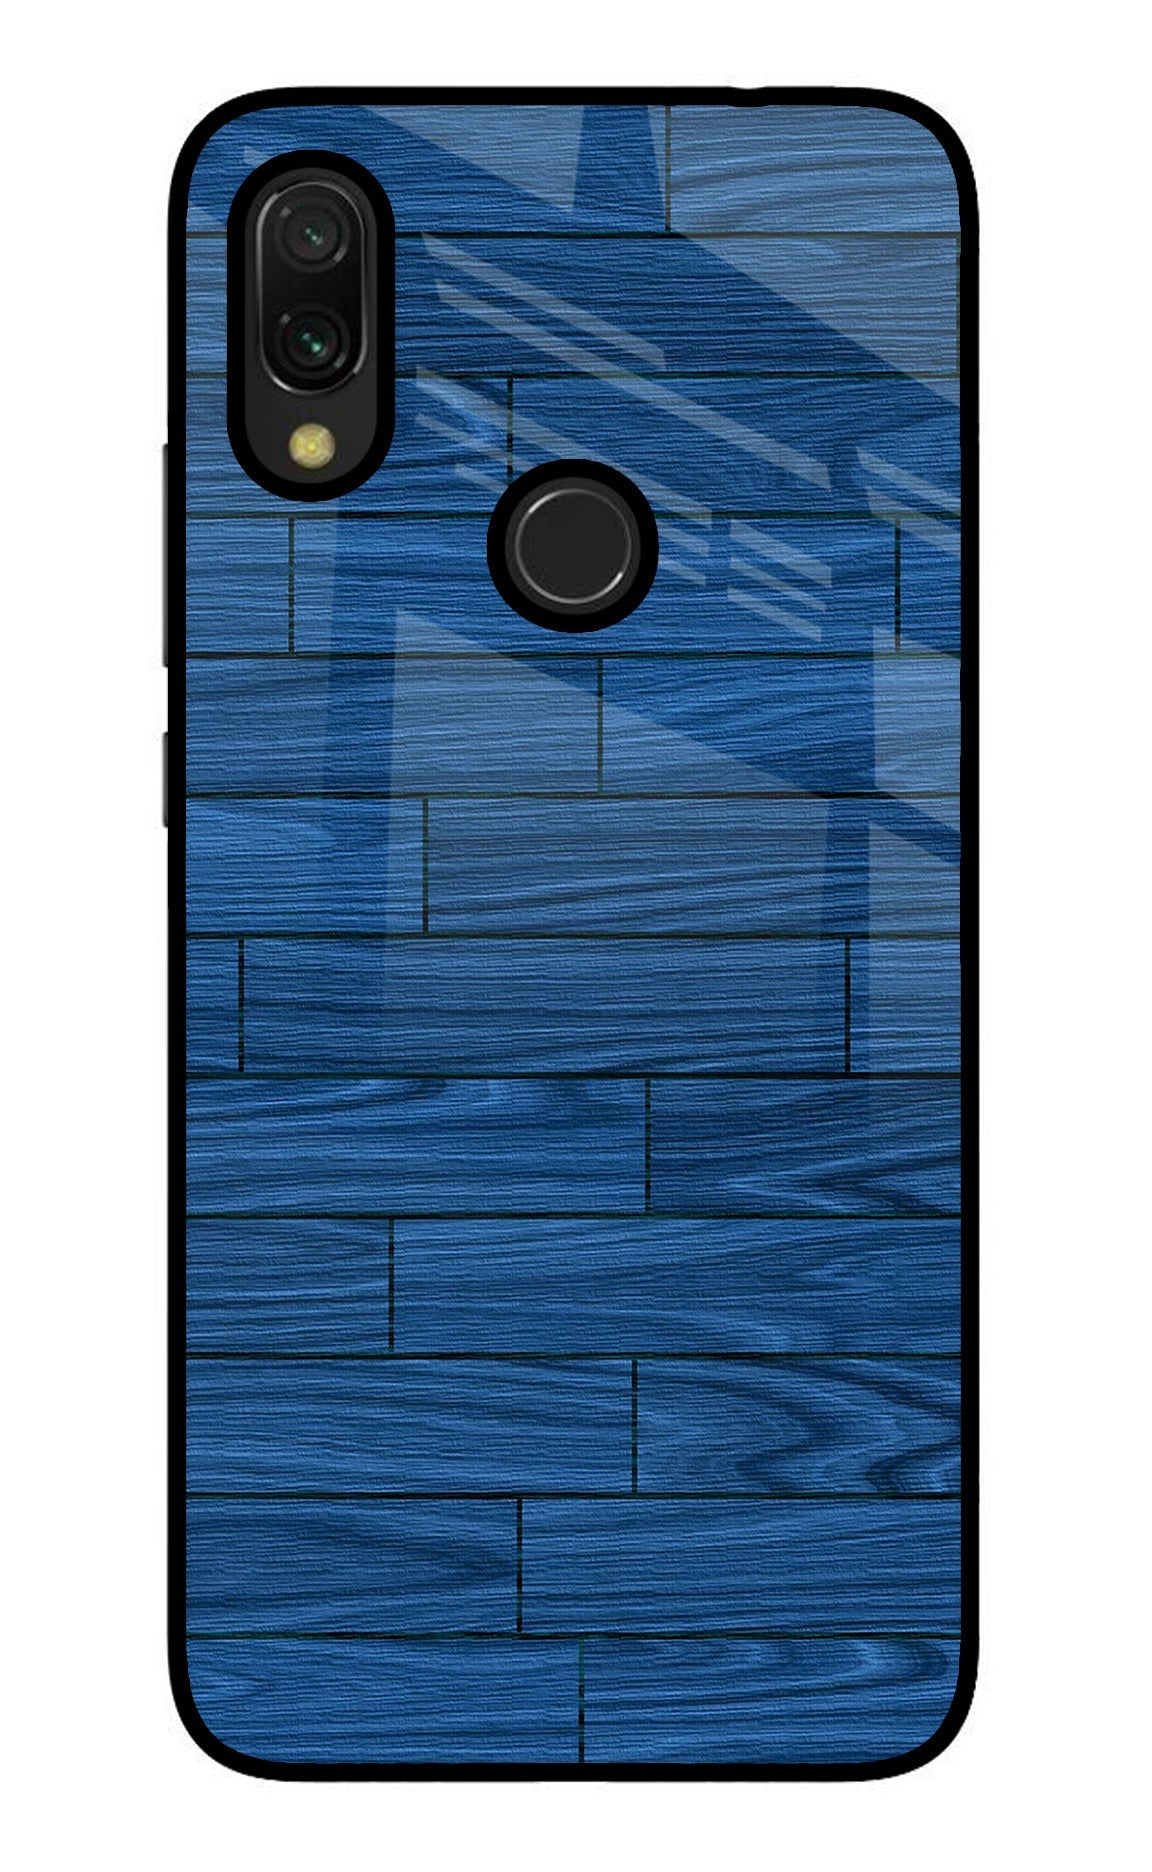 Wooden Texture Redmi 7 Glass Case